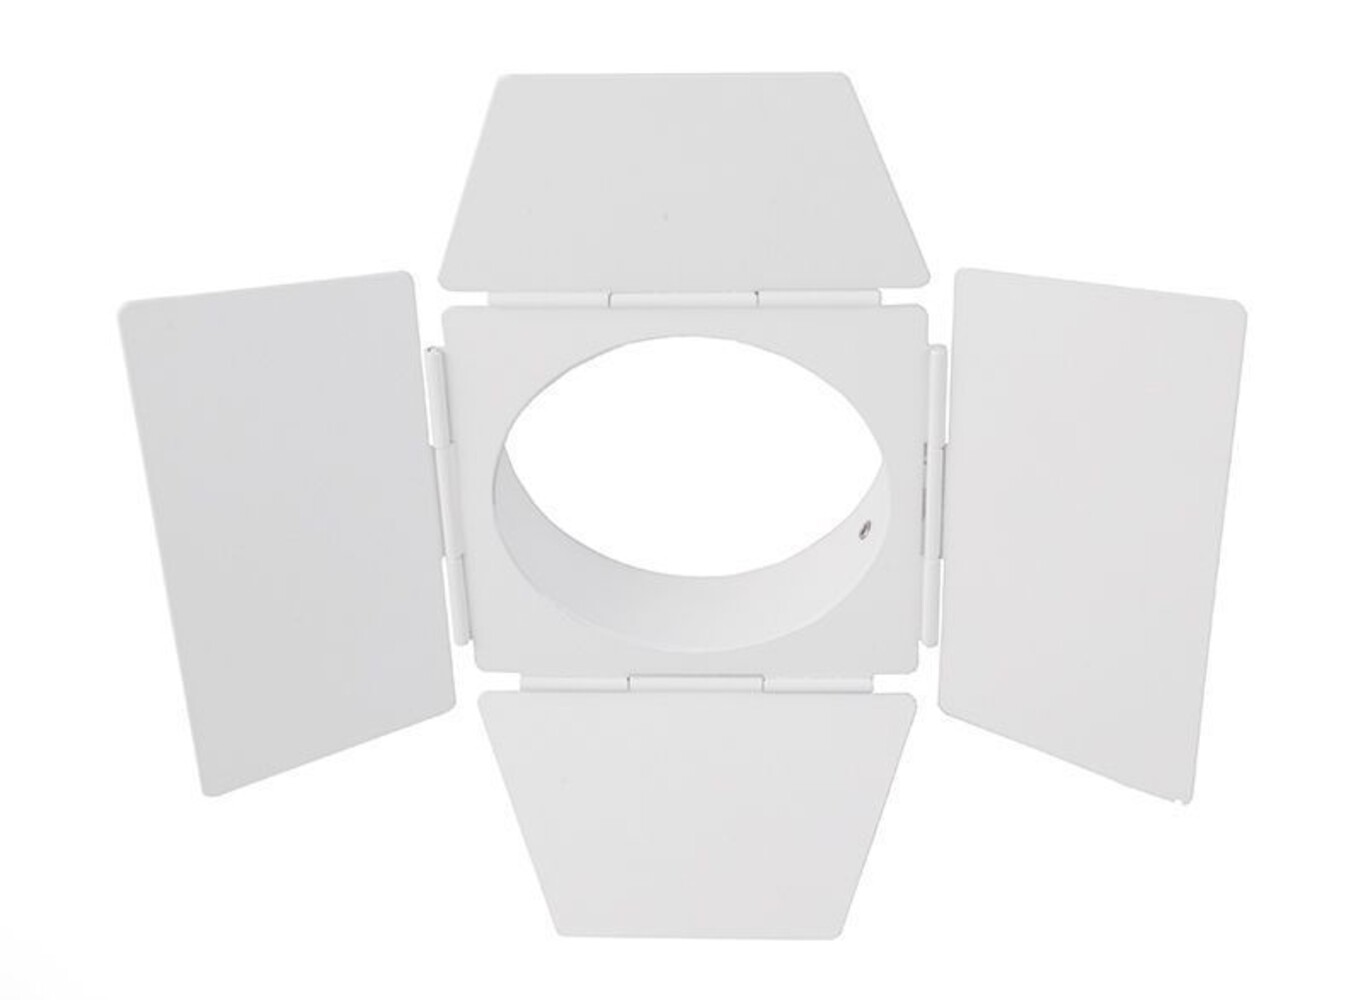 Hochwertiges Deko-Light Zubehör in Weiß mit edler Torblende und kompakter Größe von 230mm Breite und 90mm Höhe